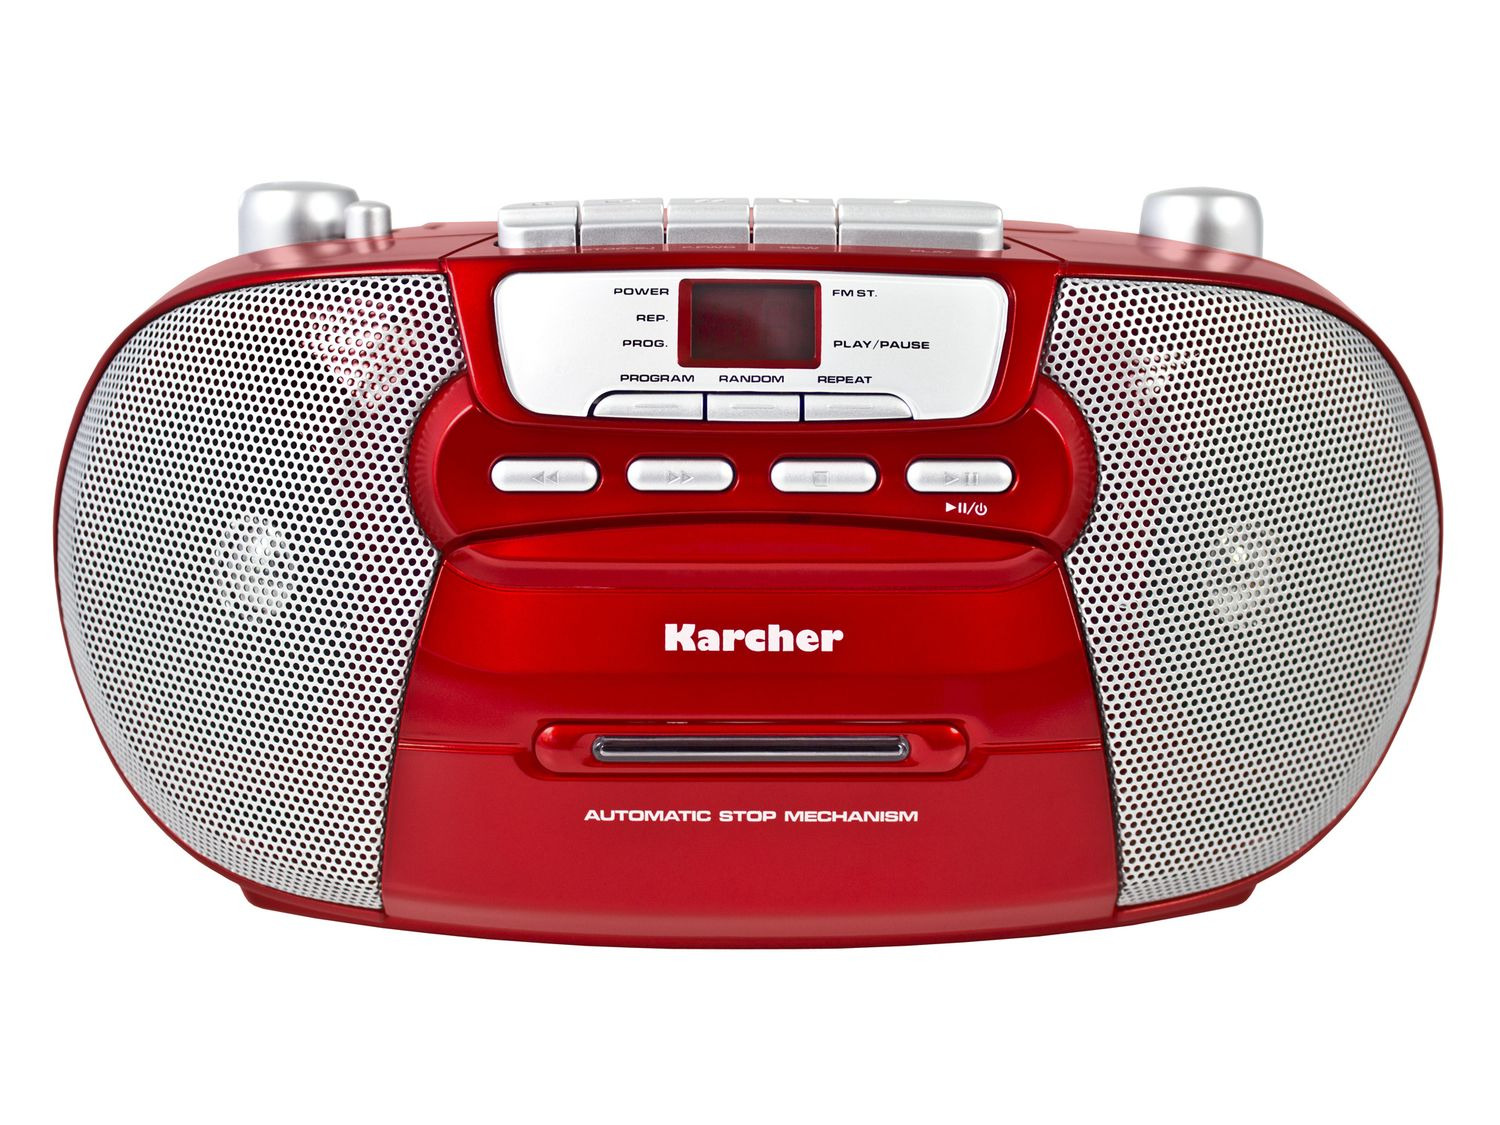 Karcher RR 5040 Oberon Radio CD portatile Radio AM/FM, CD, Cassette, AUX IN, alimentazione/Funzionamento a batteria